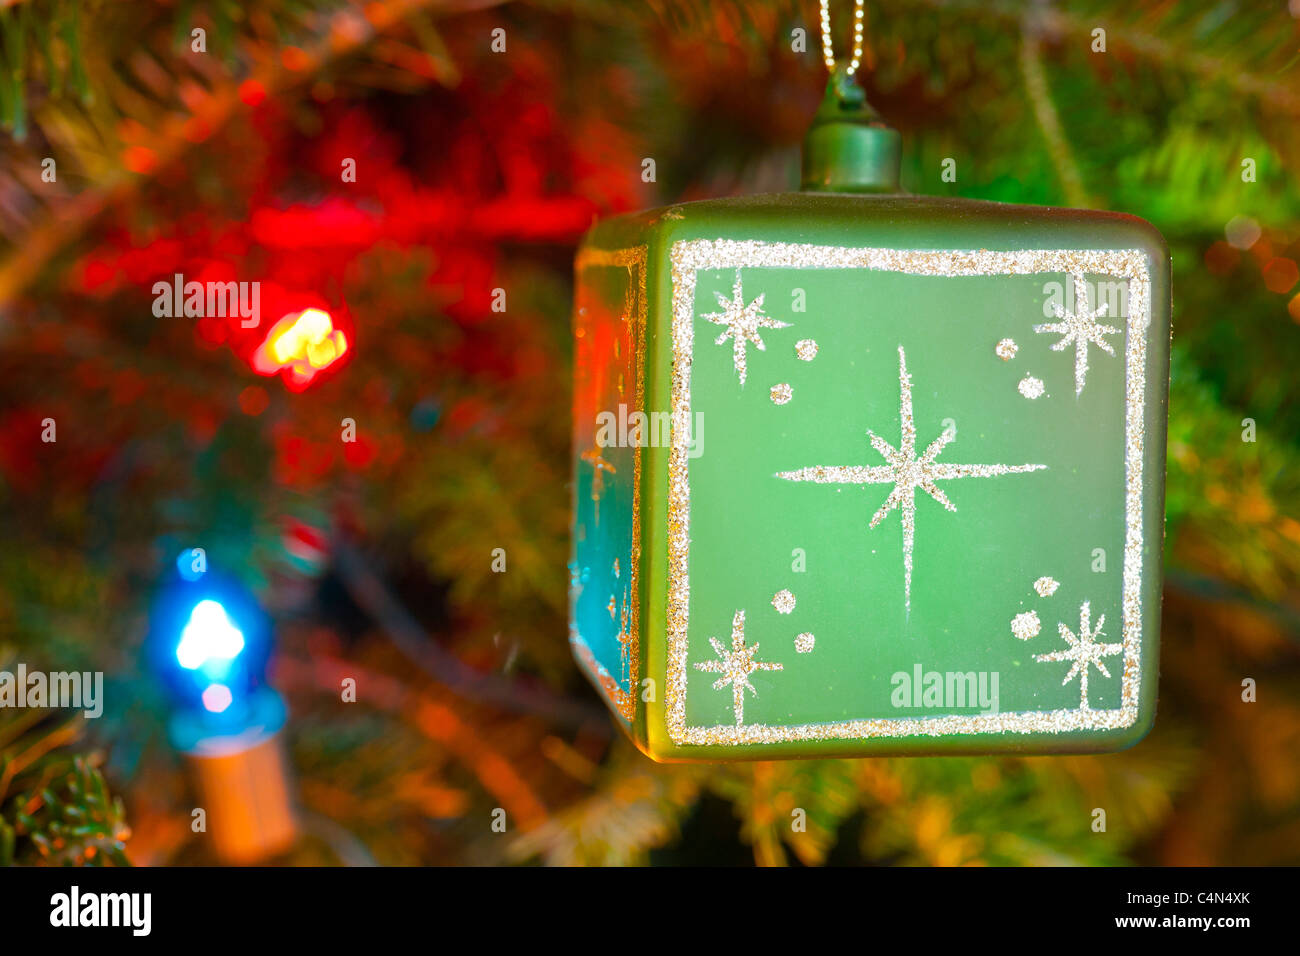 Christmas Ornament on a Christmas Tree Stock Photo